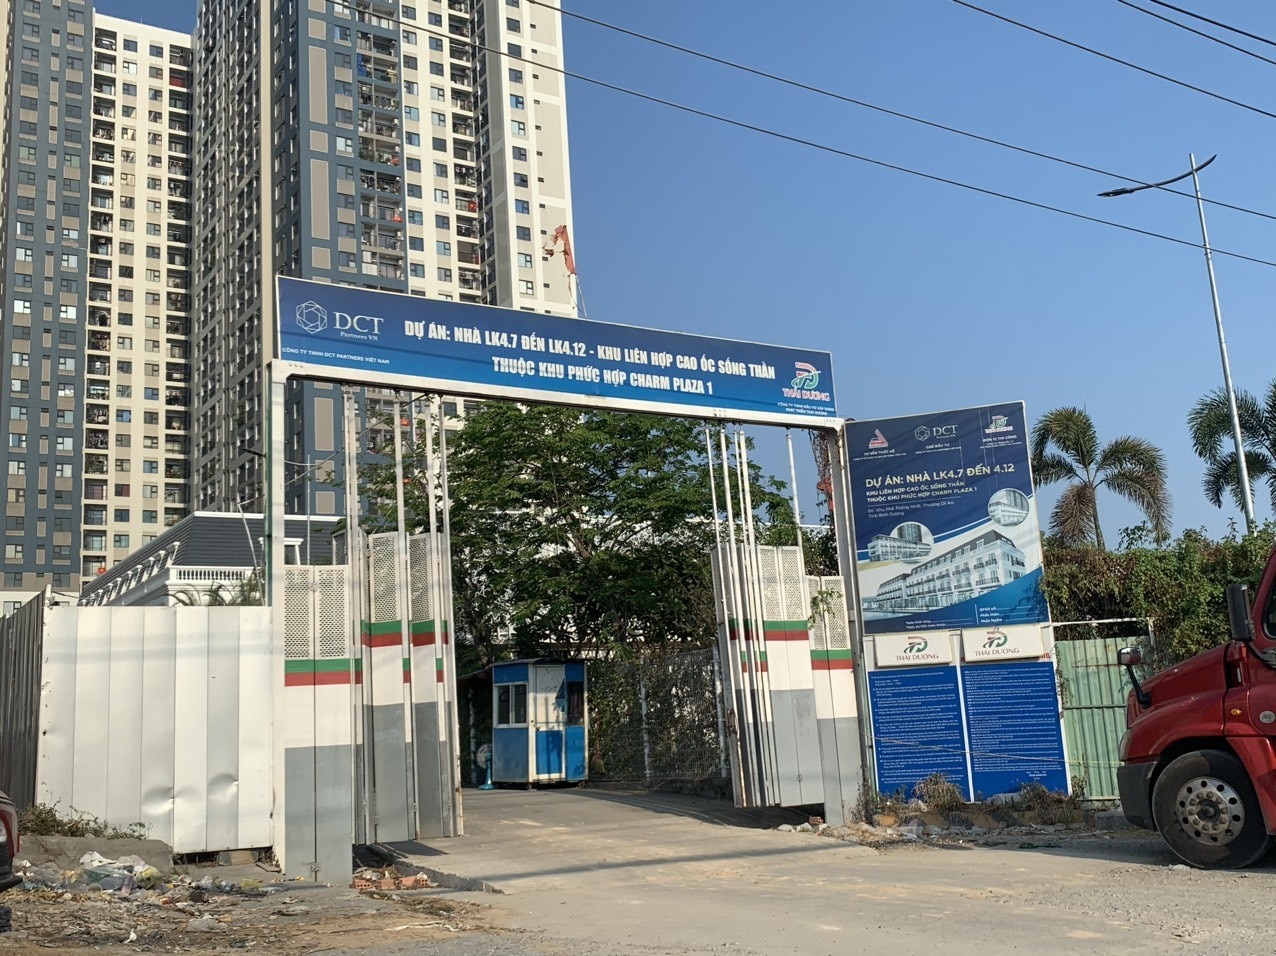 부동산 - Binh Duong 건설부는 다양한 부동산 프로젝트에 대한 정보를 제공합니다(그림 2).